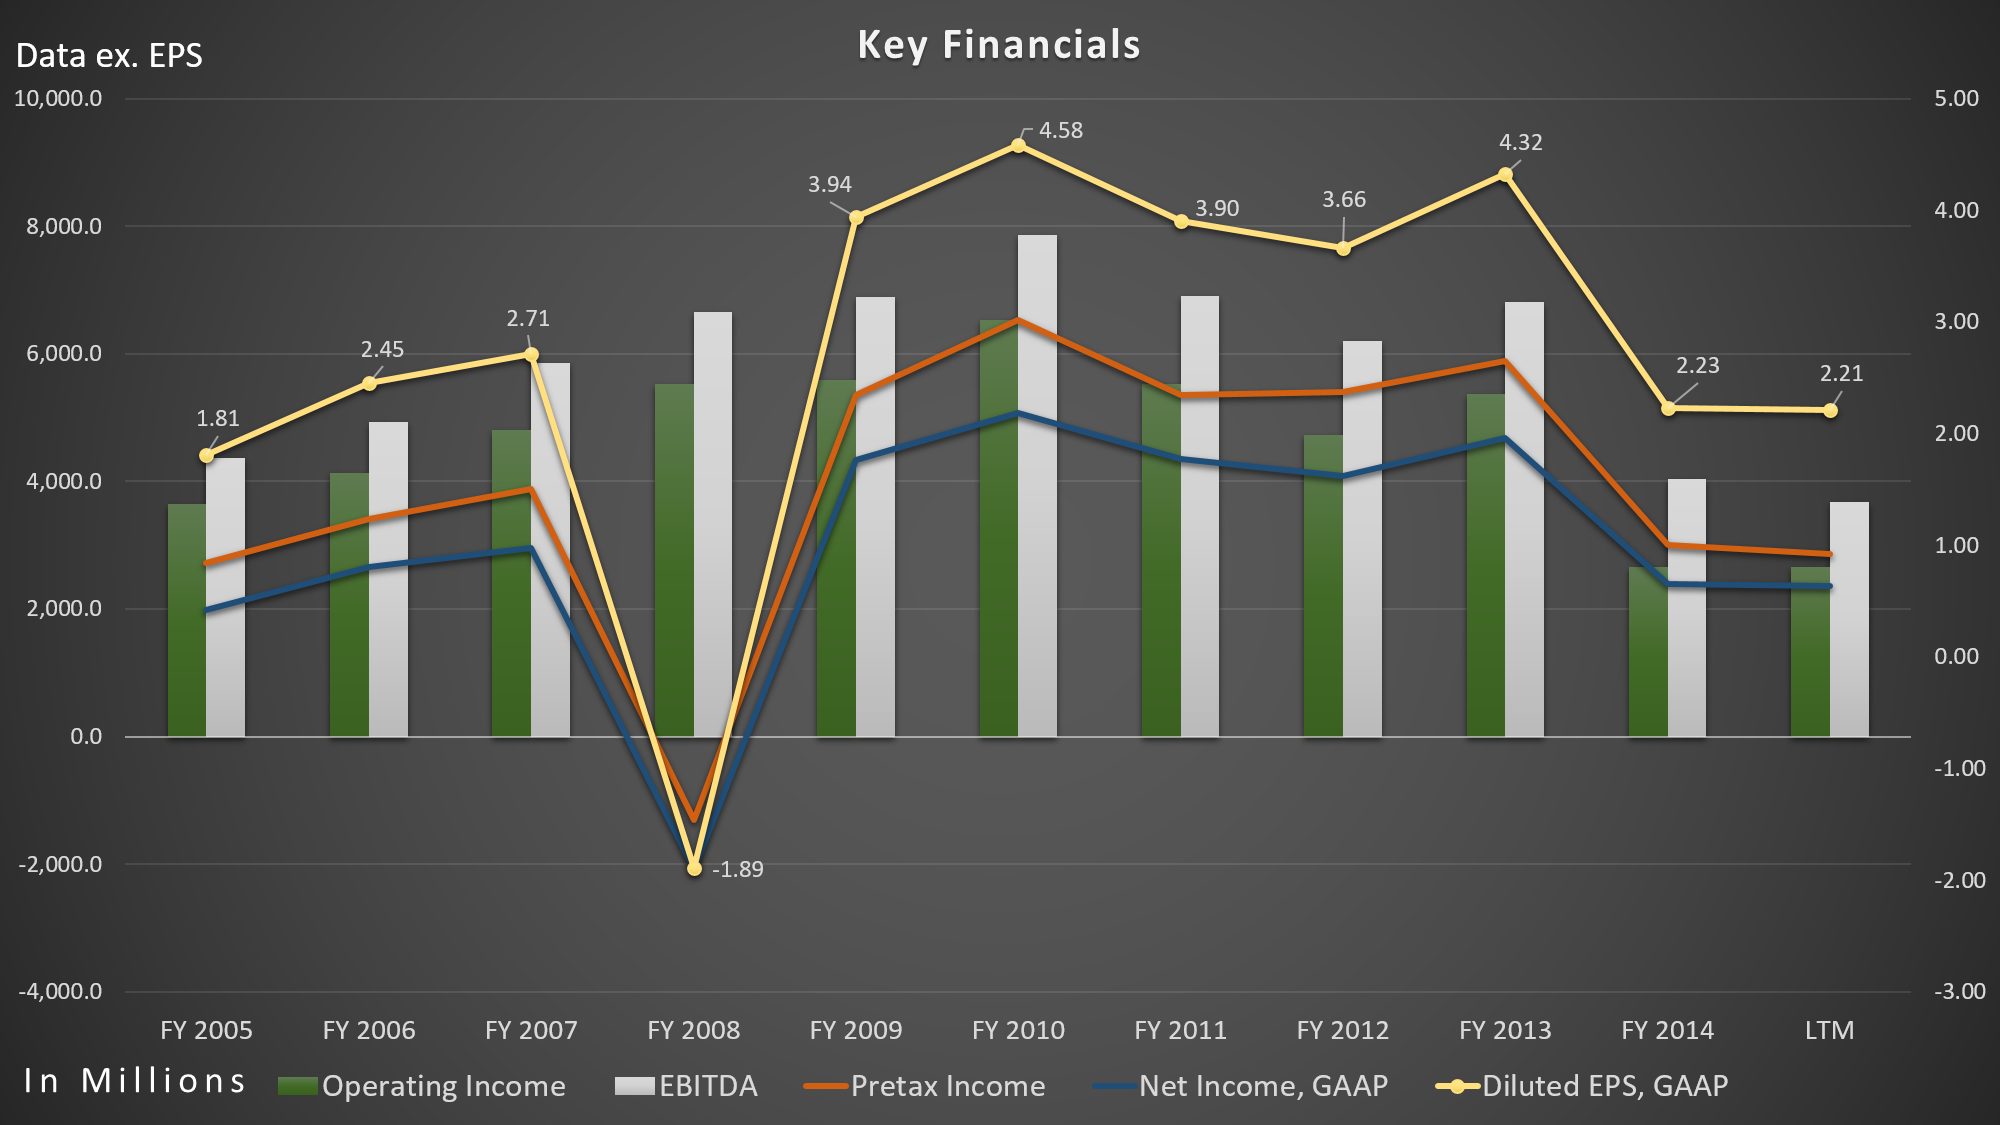 Eli Lilly - Key Financials 